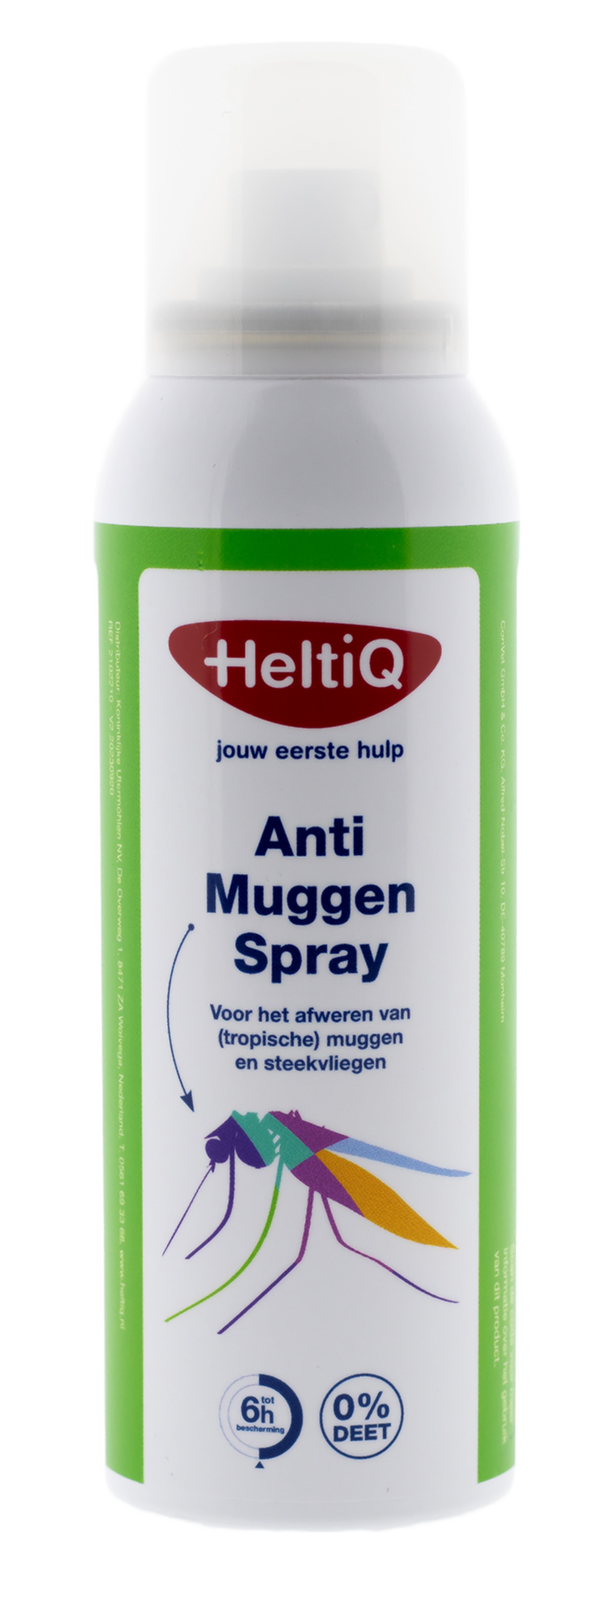 Image of HeltiQ Anti-Muggen Spray 0% Deet 